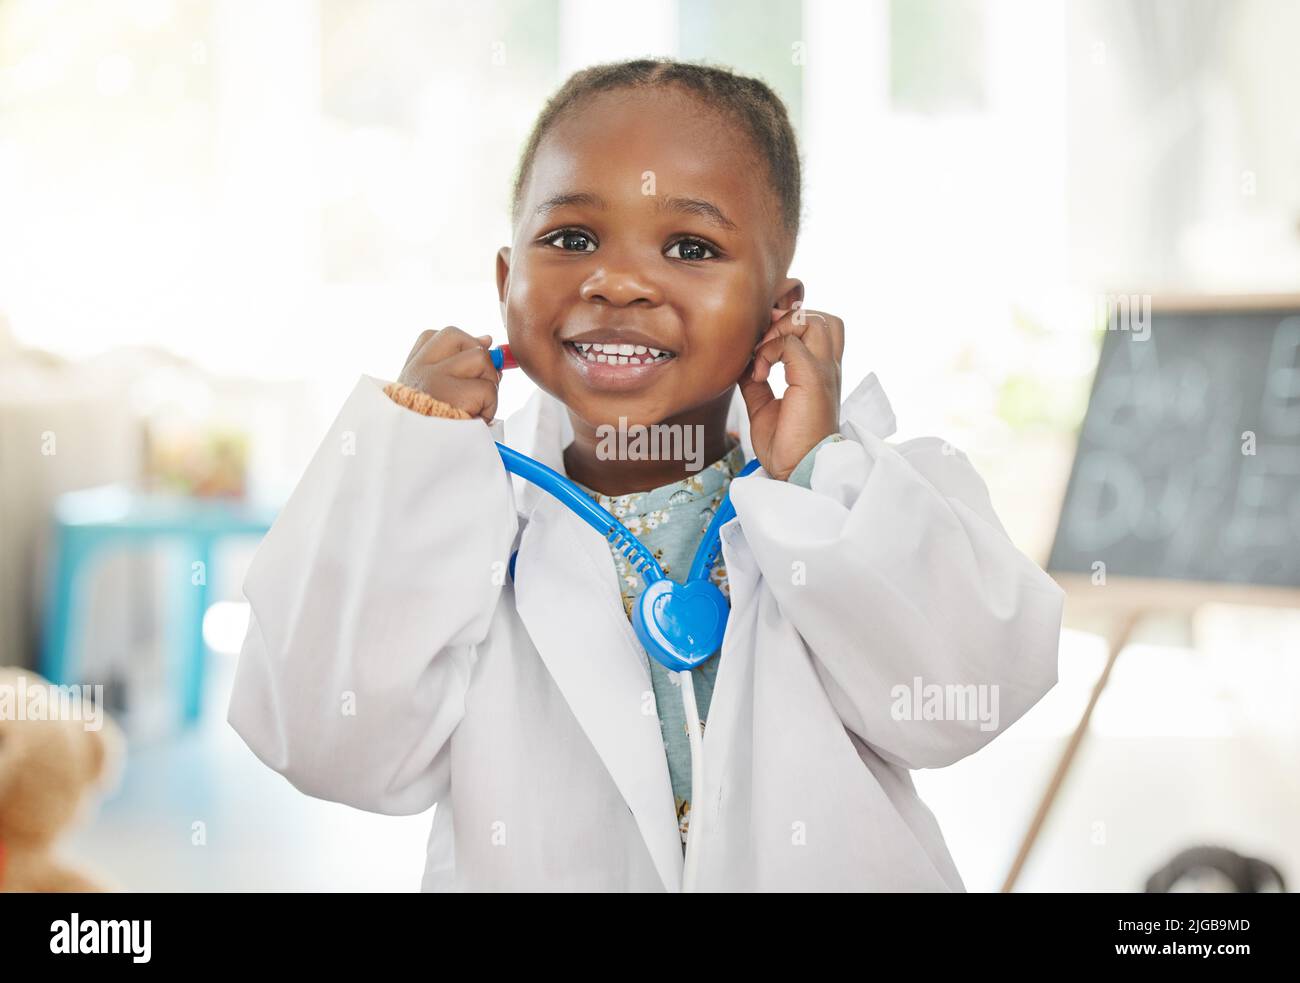 Un giorno i pazienti verranno da me. Una bambina che gioca vestire come medico. Foto Stock